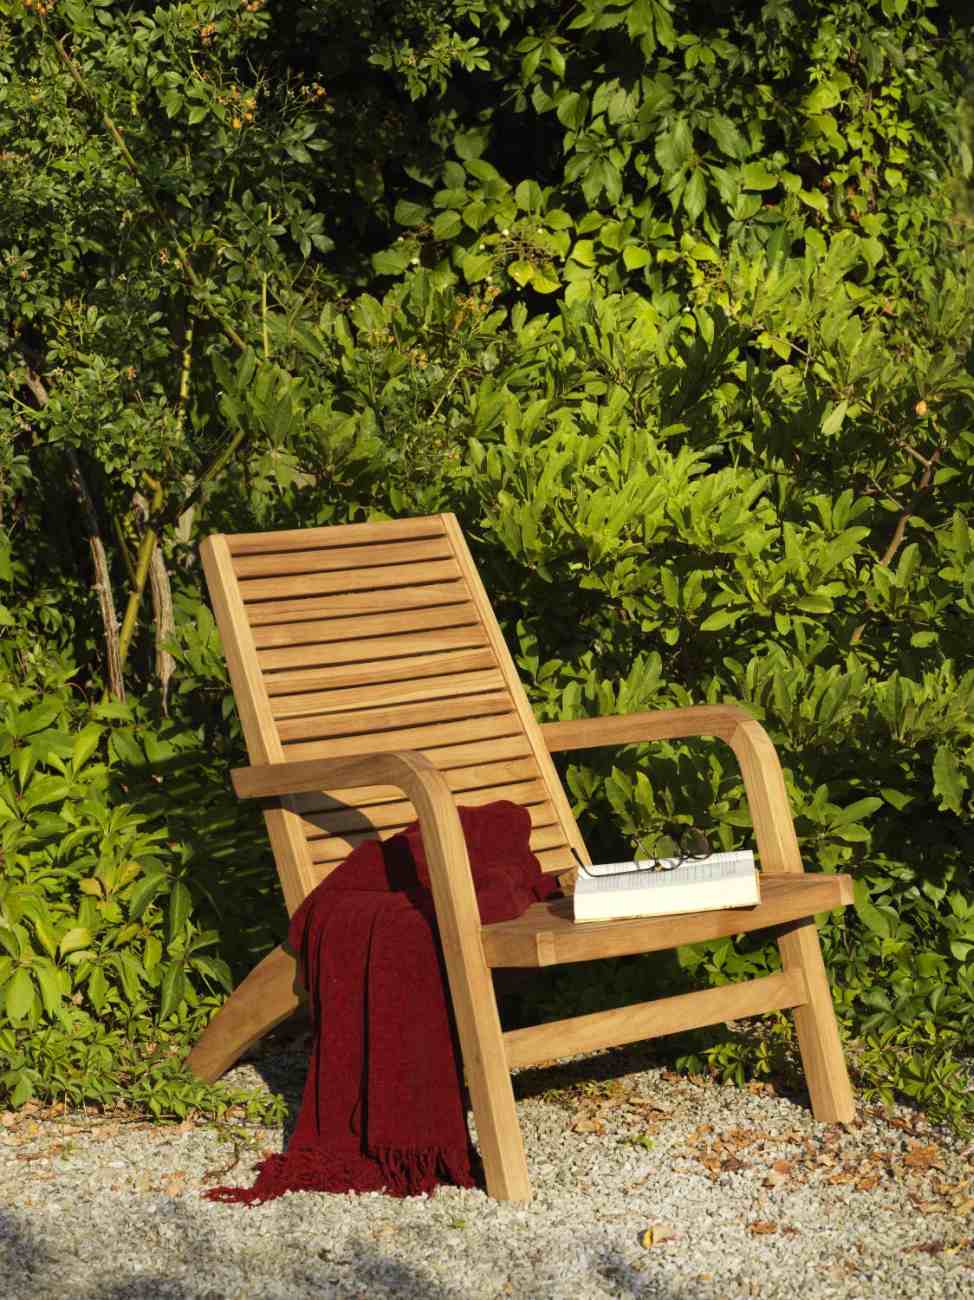 Der Gartensessel Volos überzeugt mit seinem modernen Design. Gefertigt wurde er aus Teakholz, welches einen natürlichen Farbton besitzt. Das Gestell ist auch aus Teakholz und hat eine natürliche Farbe. Die Sitzhöhe des Sessels beträgt 33 cm.